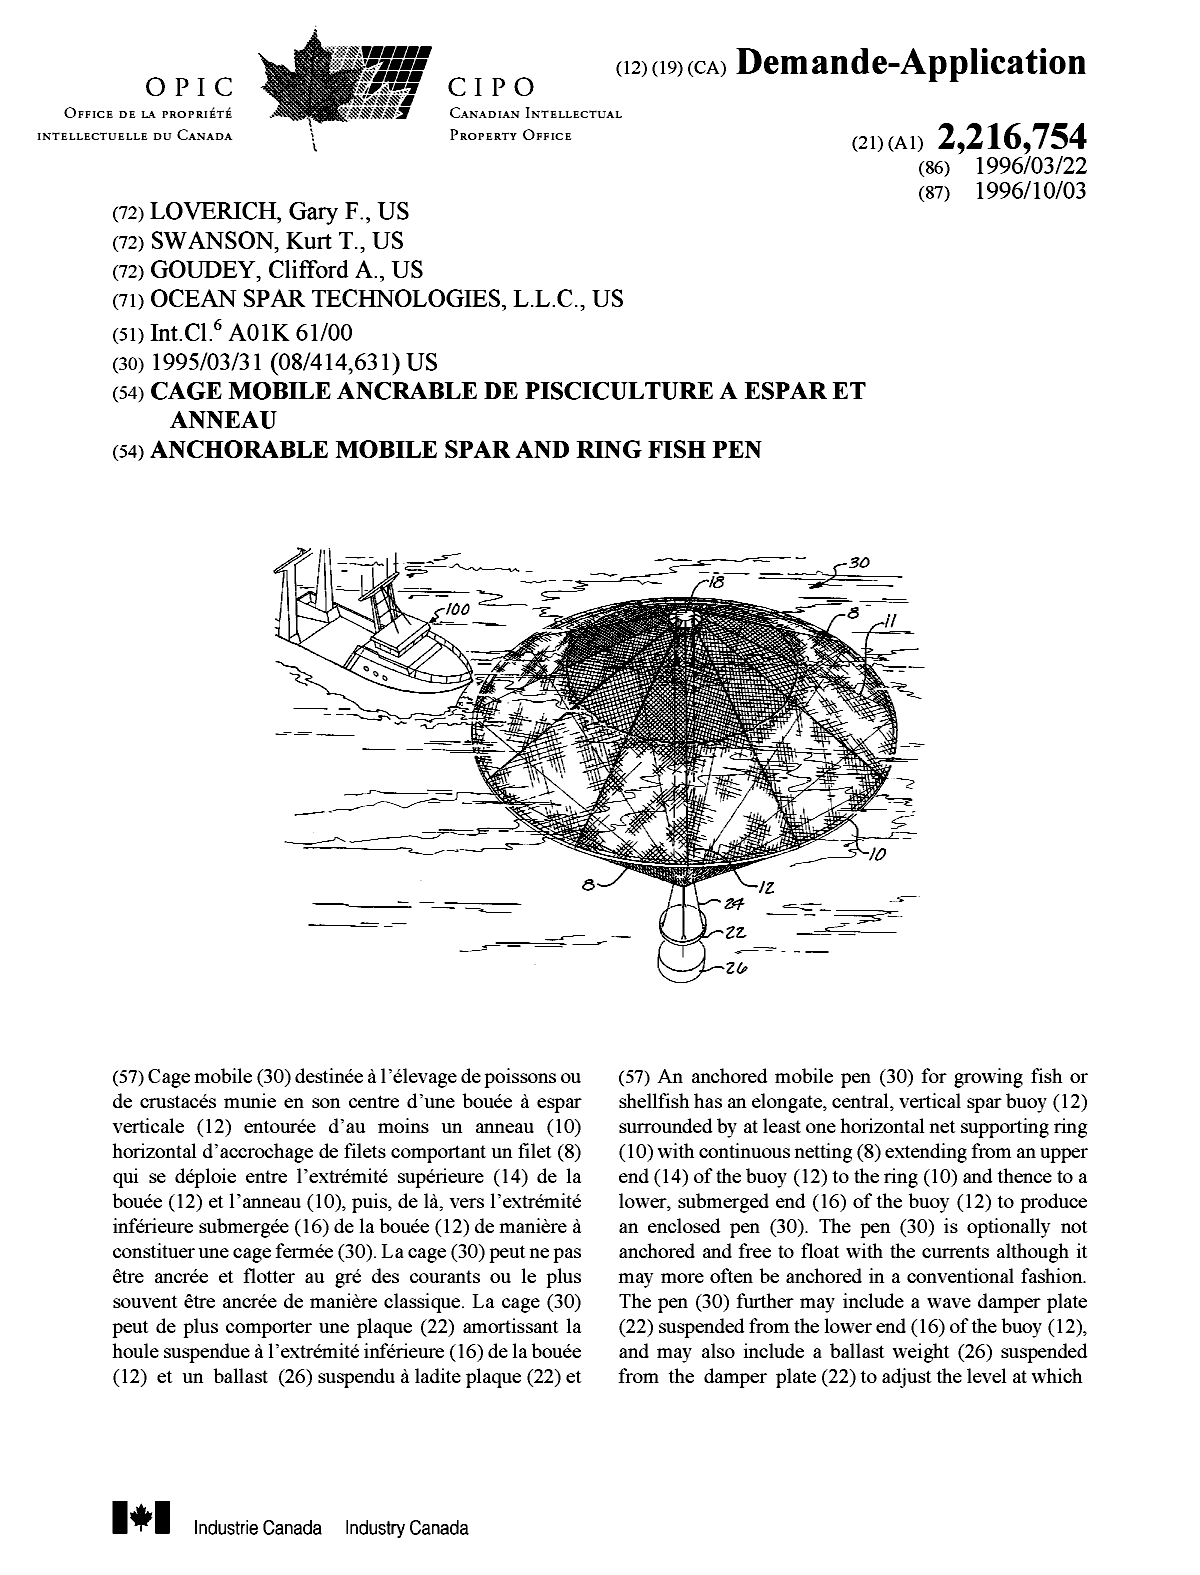 Document de brevet canadien 2216754. Page couverture 19980120. Image 1 de 2